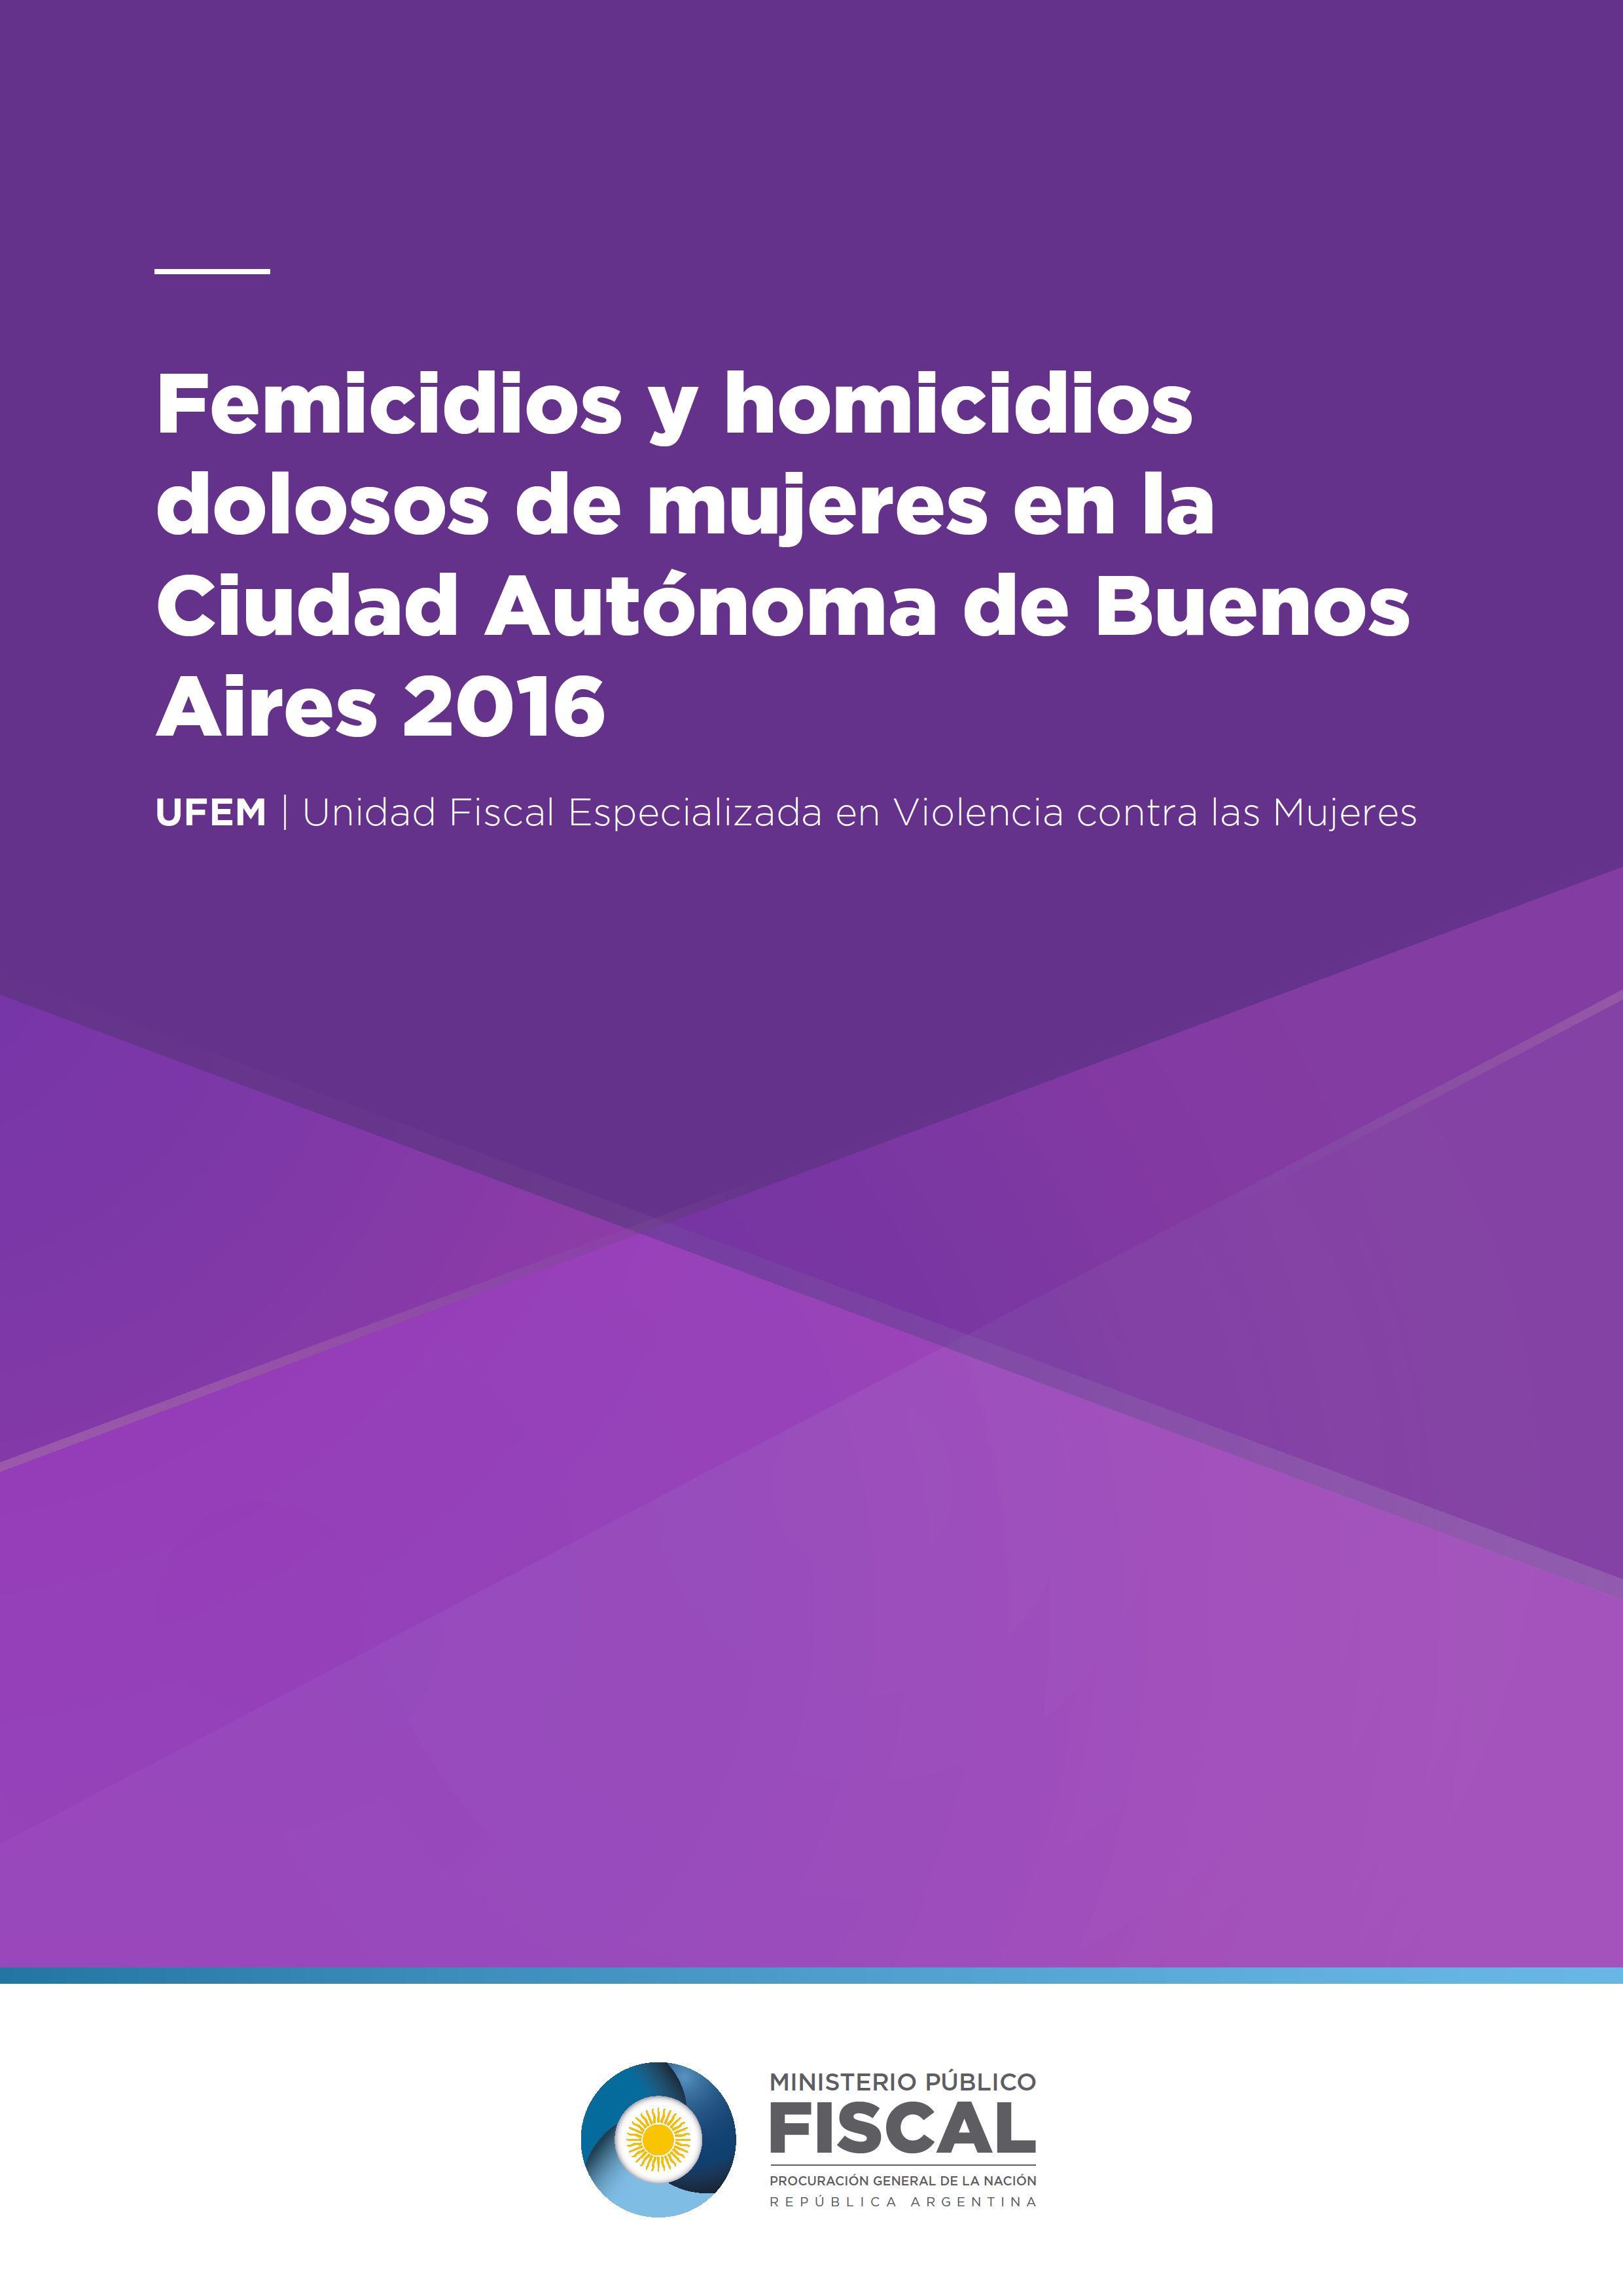 Femicidios y Homicidios dolosos de mujeres la Ciudad Autónoma de Buenos Aires 2016